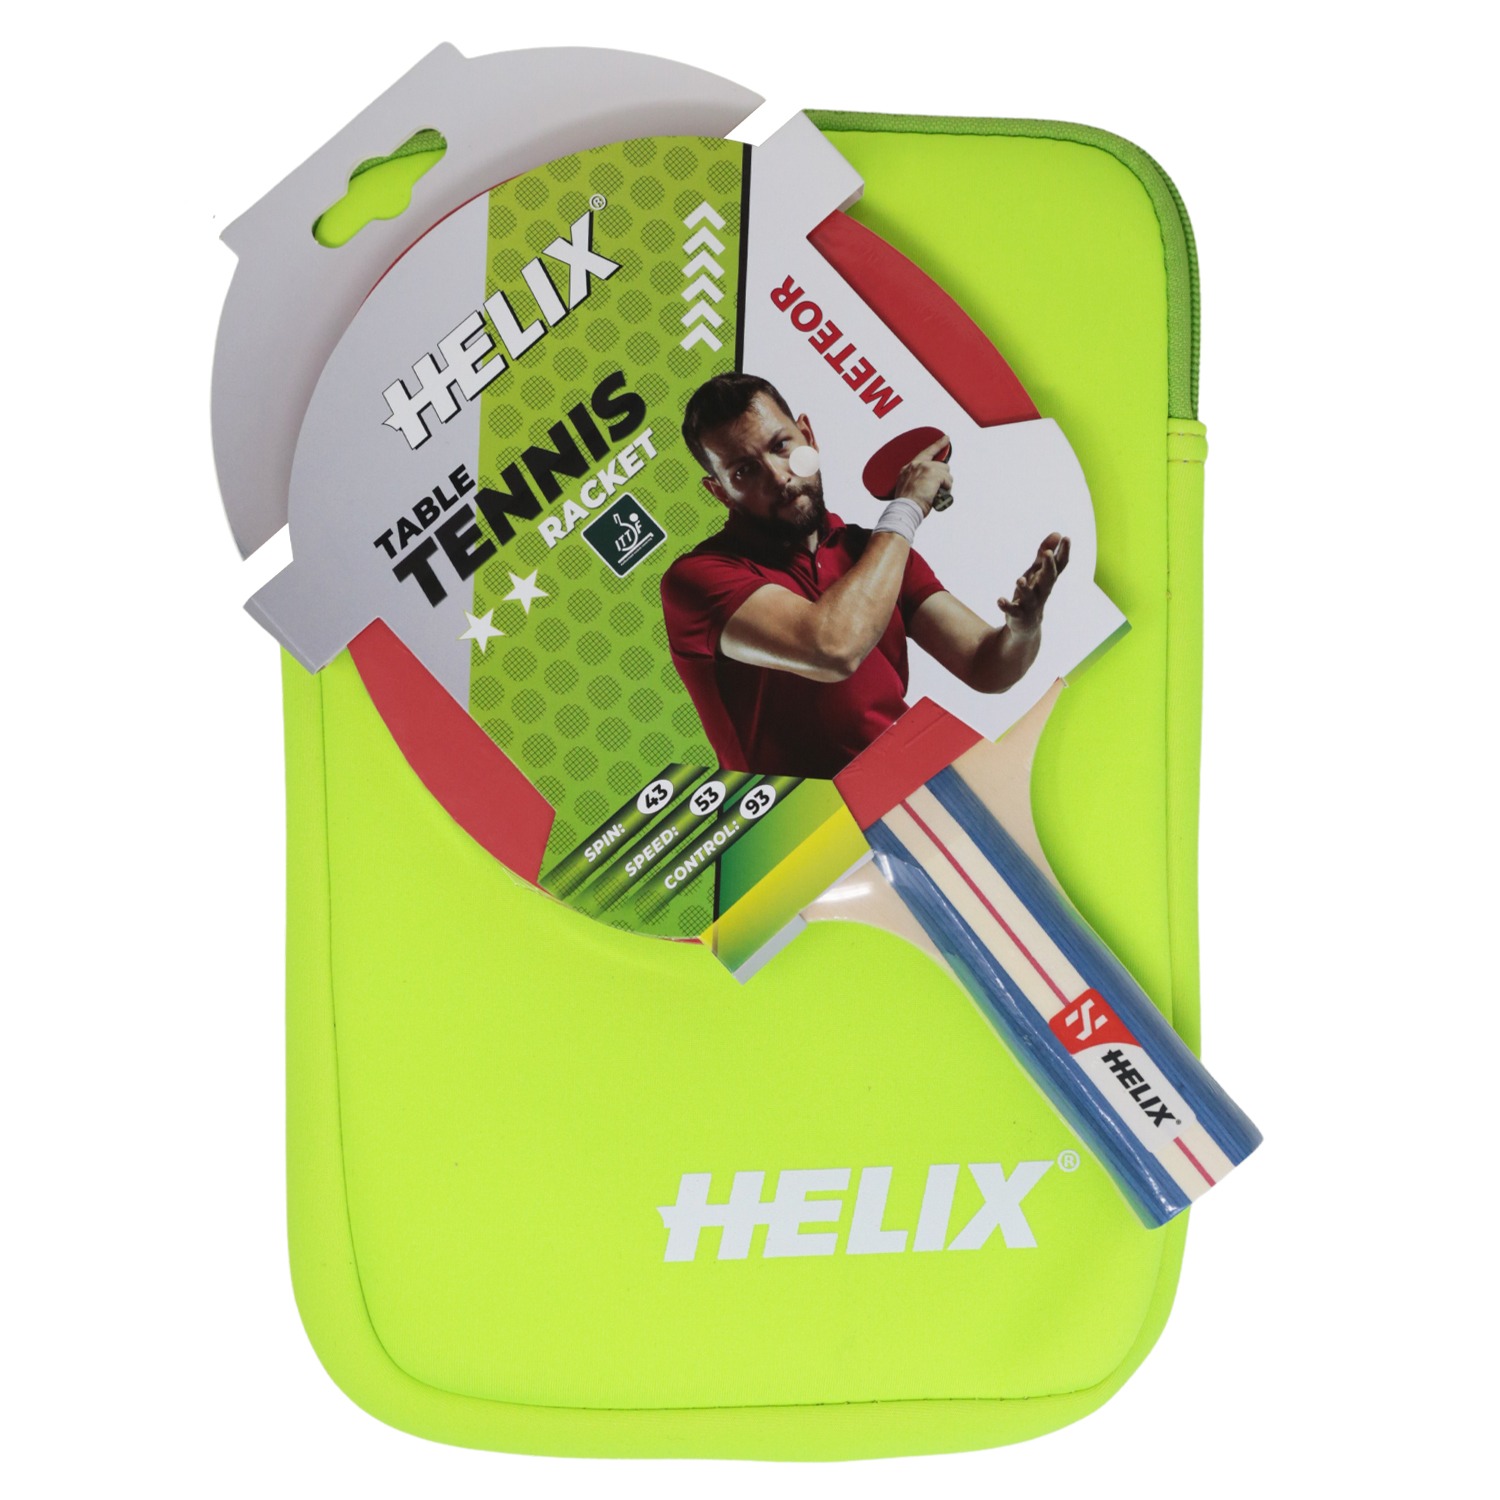 Helix Masa Tenisi Çantası - Yeşil